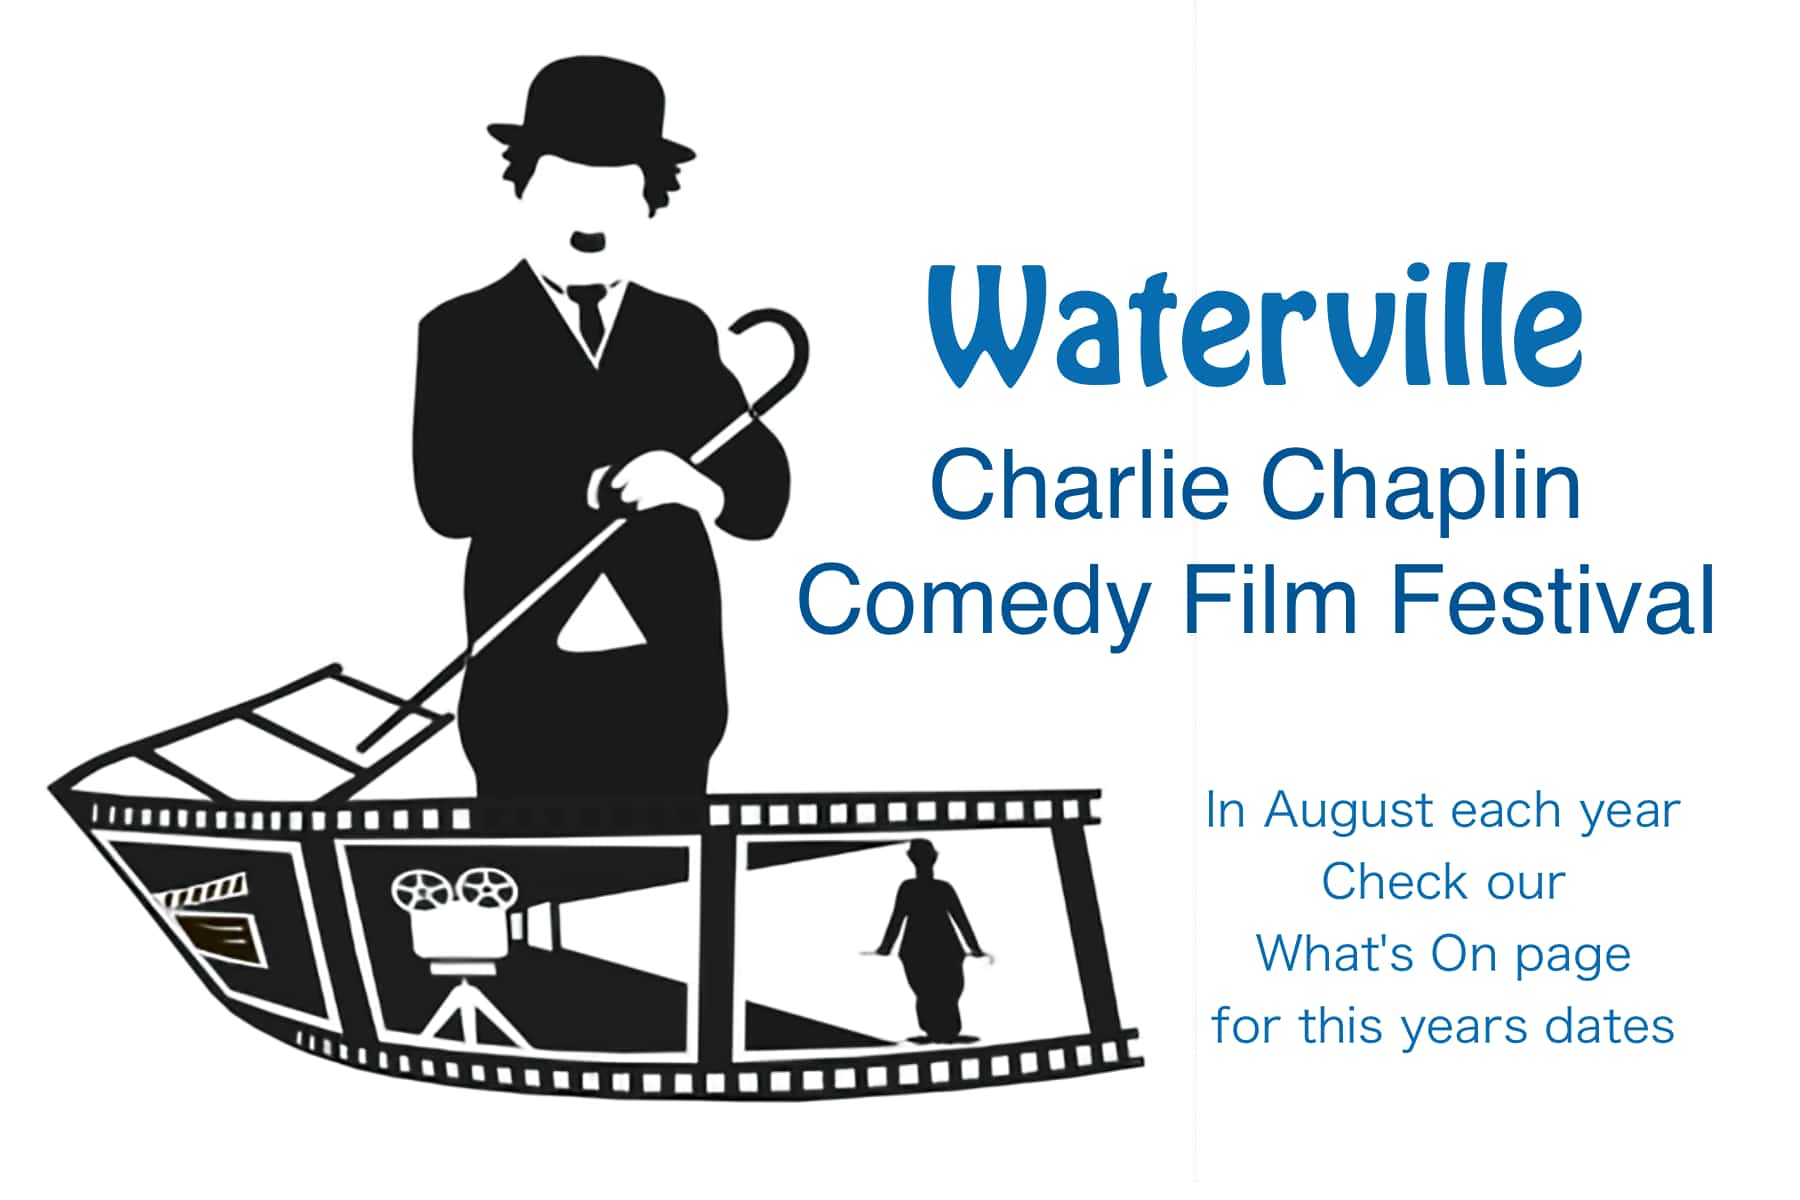 Charlie Chaplin Comedy Film Festival